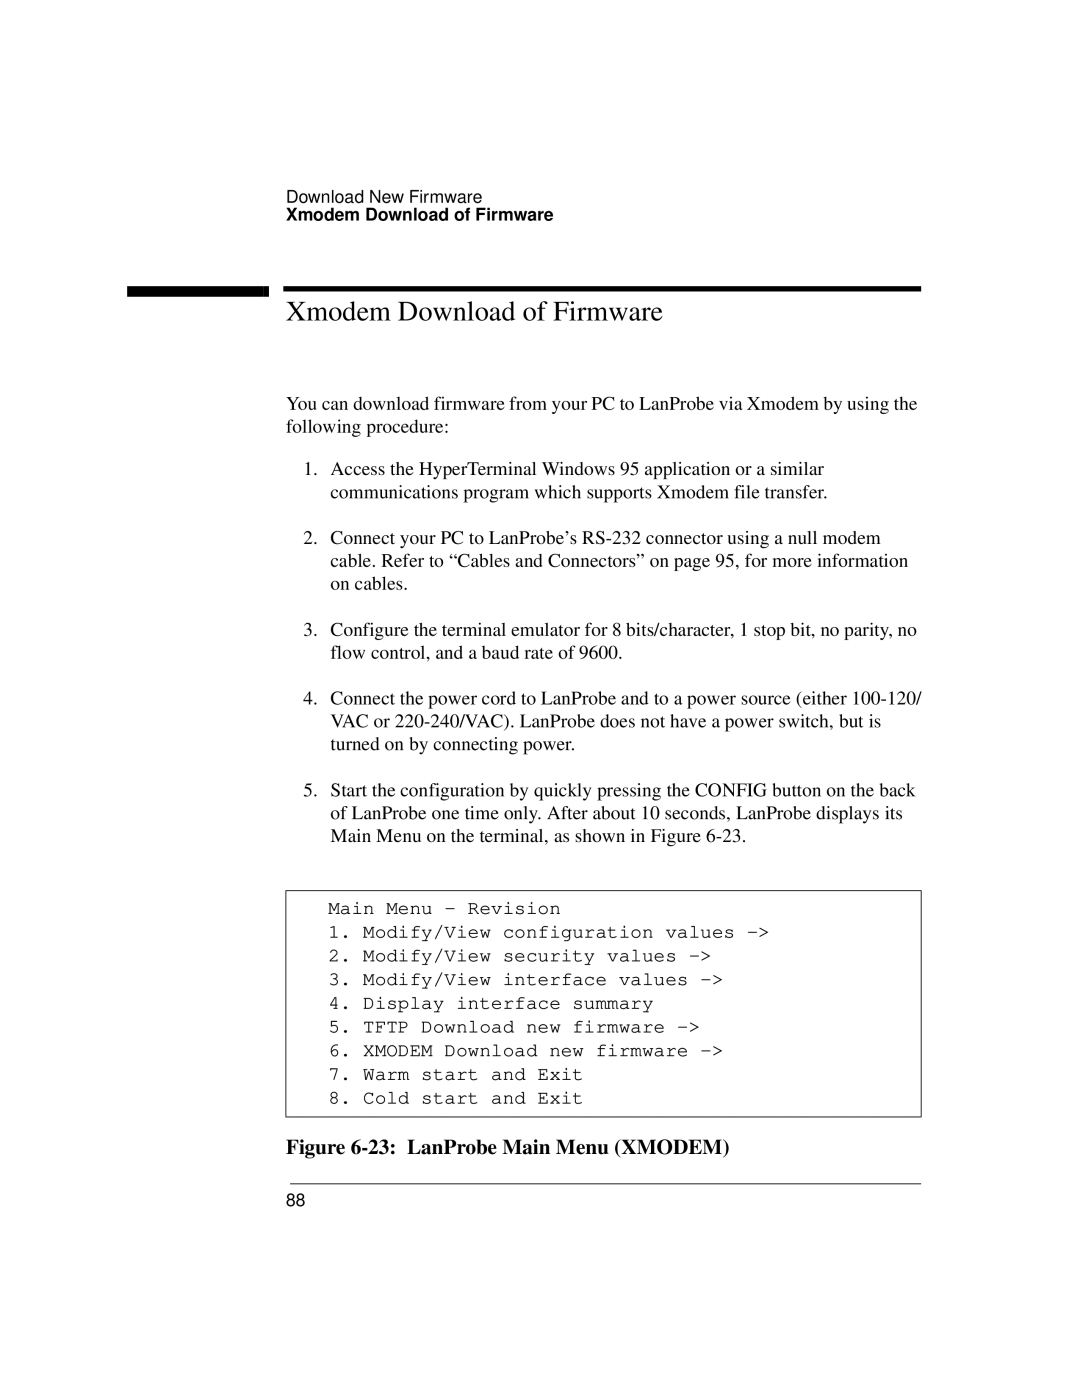 IBM 4986B LanProbe manual Xmodem Download of Firmware, 23 LanProbe Main Menu XMODEM 